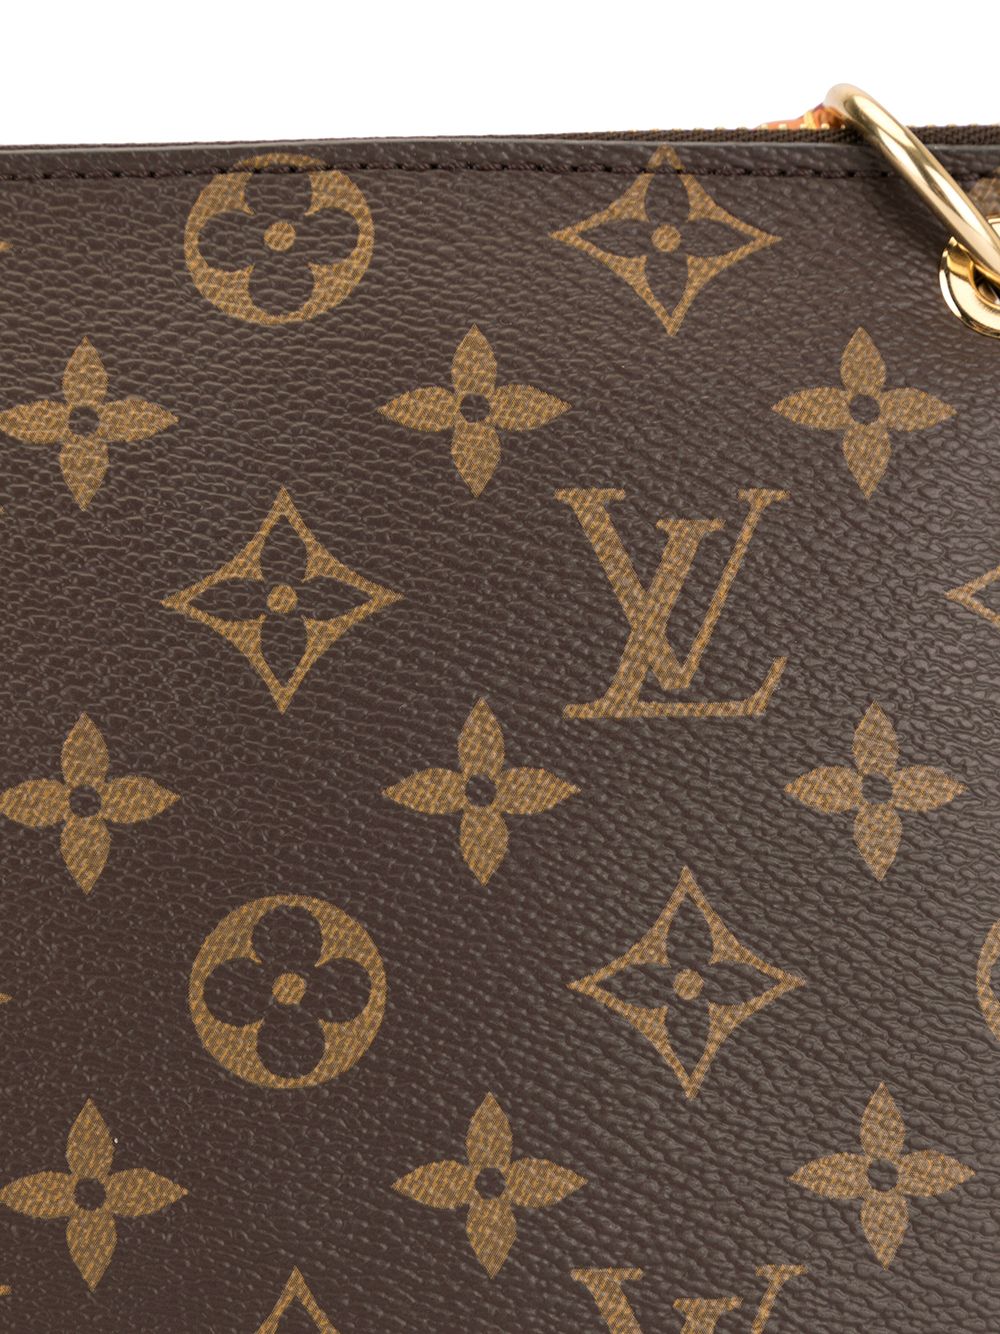 Louis Vuitton, Bags, Sold Authentic Louis Vuitton Lorette